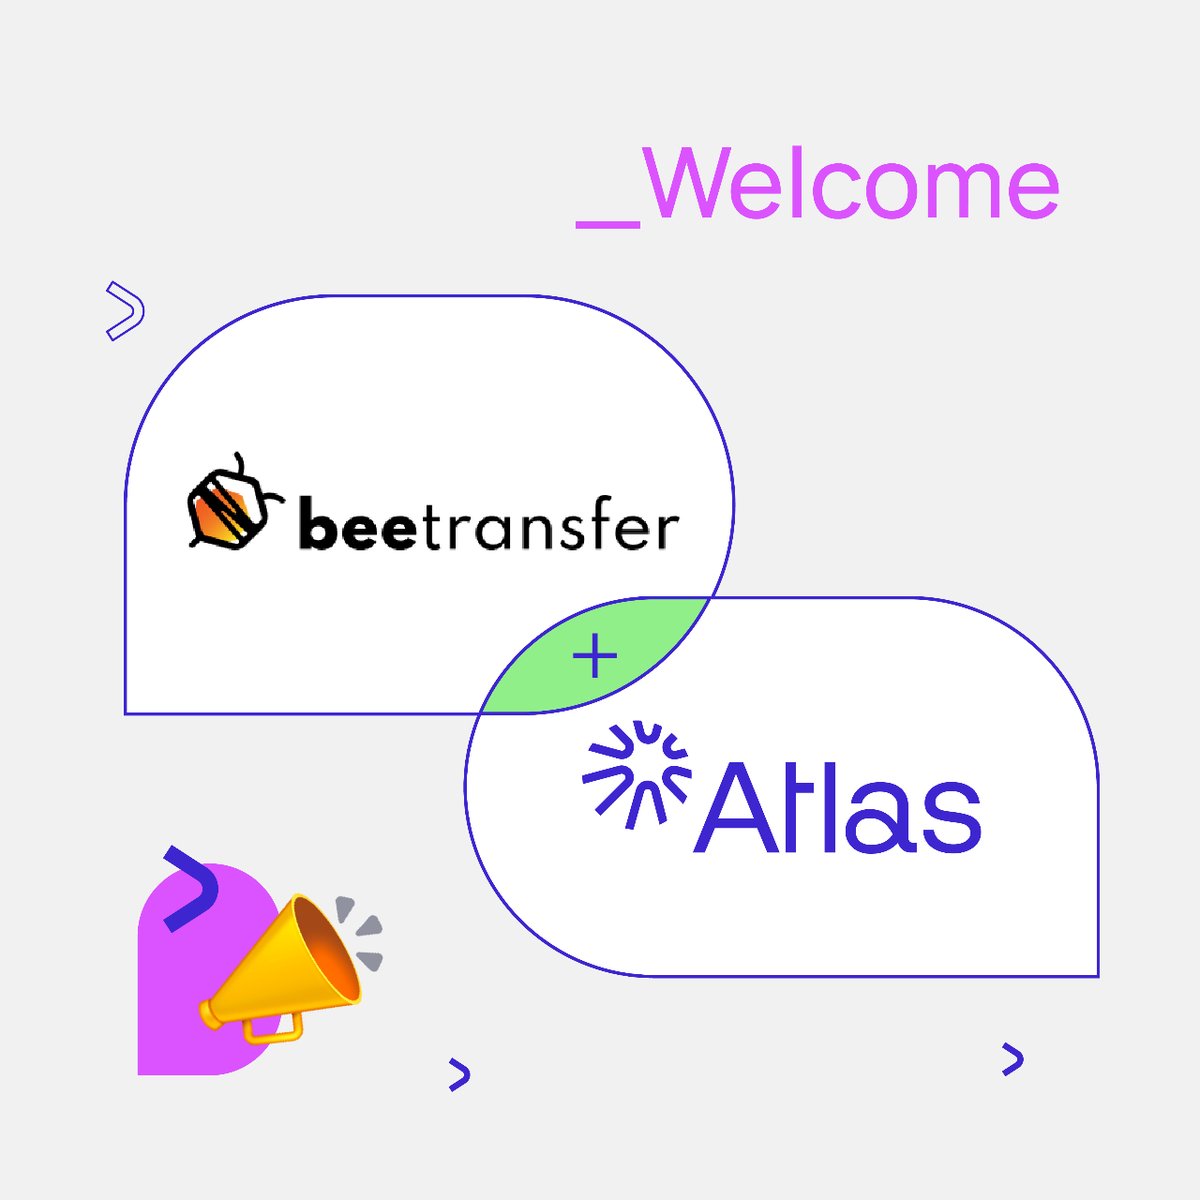 🥁New client alert 👉 Damos la bienvenida a Beetransfer. Nos entusiasma ver cómo cada día más empresas buscan cuidar de forma activa y eficiente a sus equipos globales. 🚀 ¡Gracias por confiar en Atlas! #heyatlas #contractors #newclient